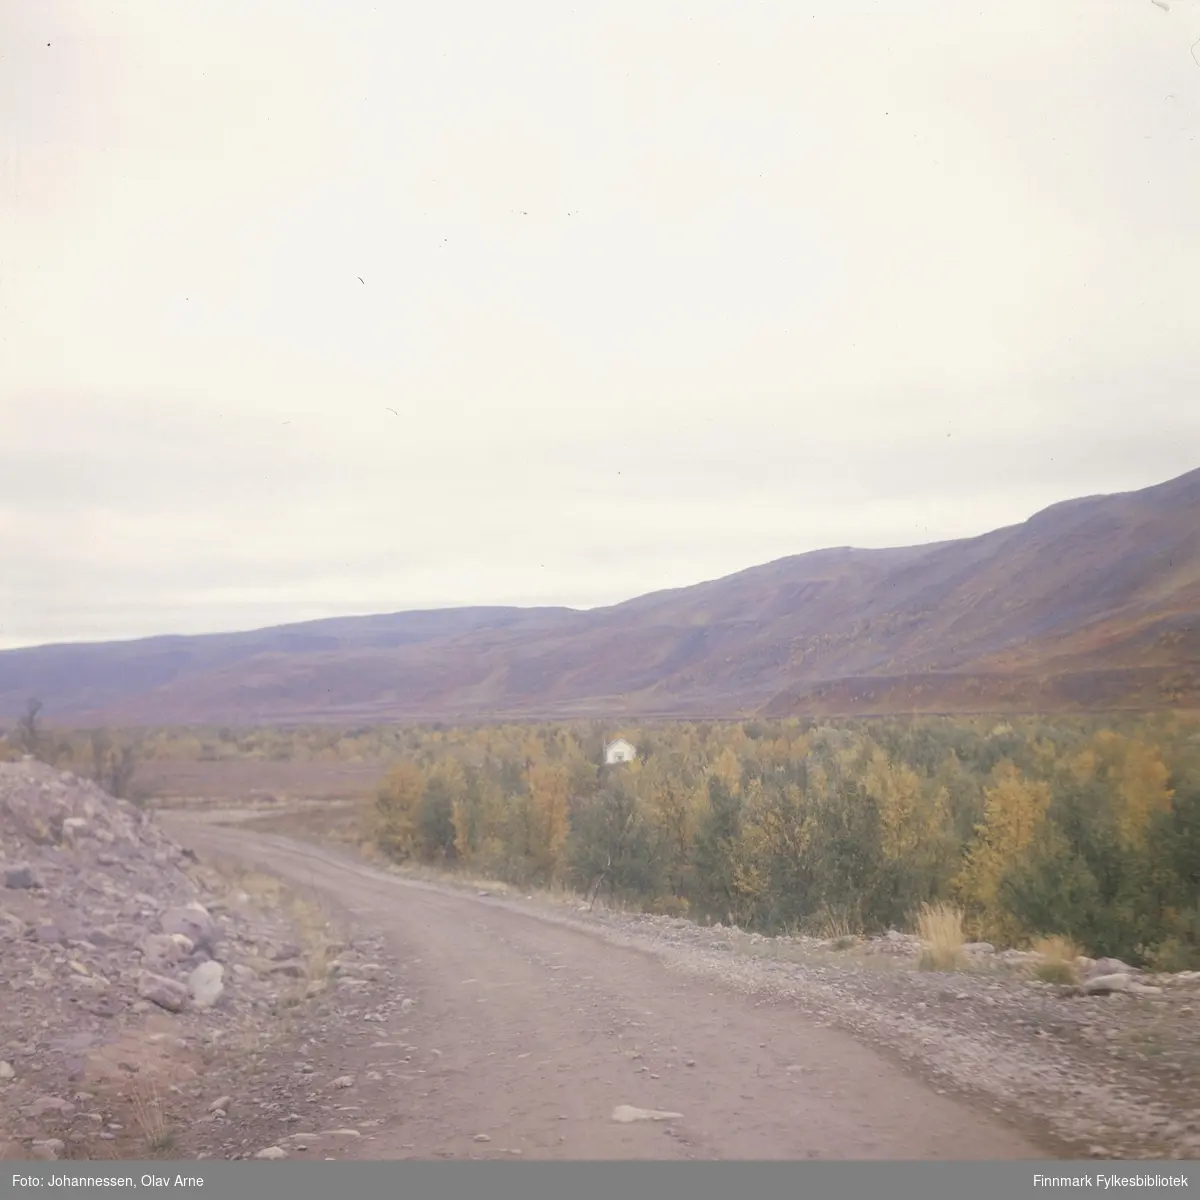 Foto av bilvei omringet av bjørkeskog, antagelig i Finnmark 

Muligens i Syltefjorddalen

Foto trolig tatt på 1960/70-tallet